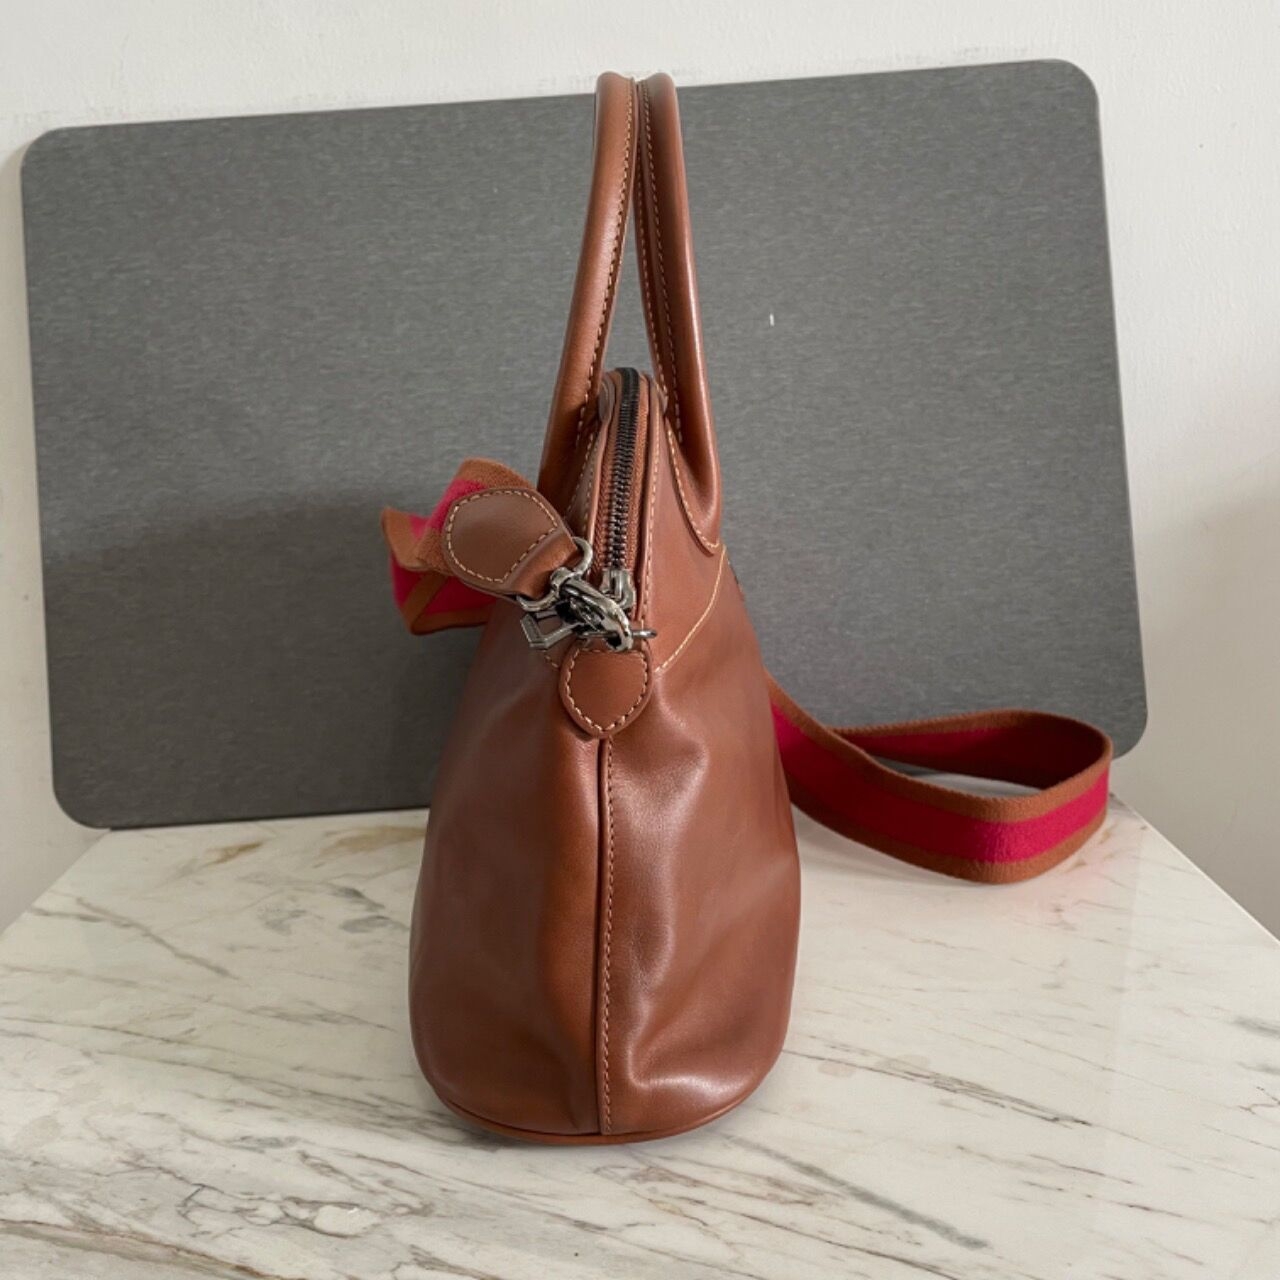 Longchamp Dome Brown Leather Handbag